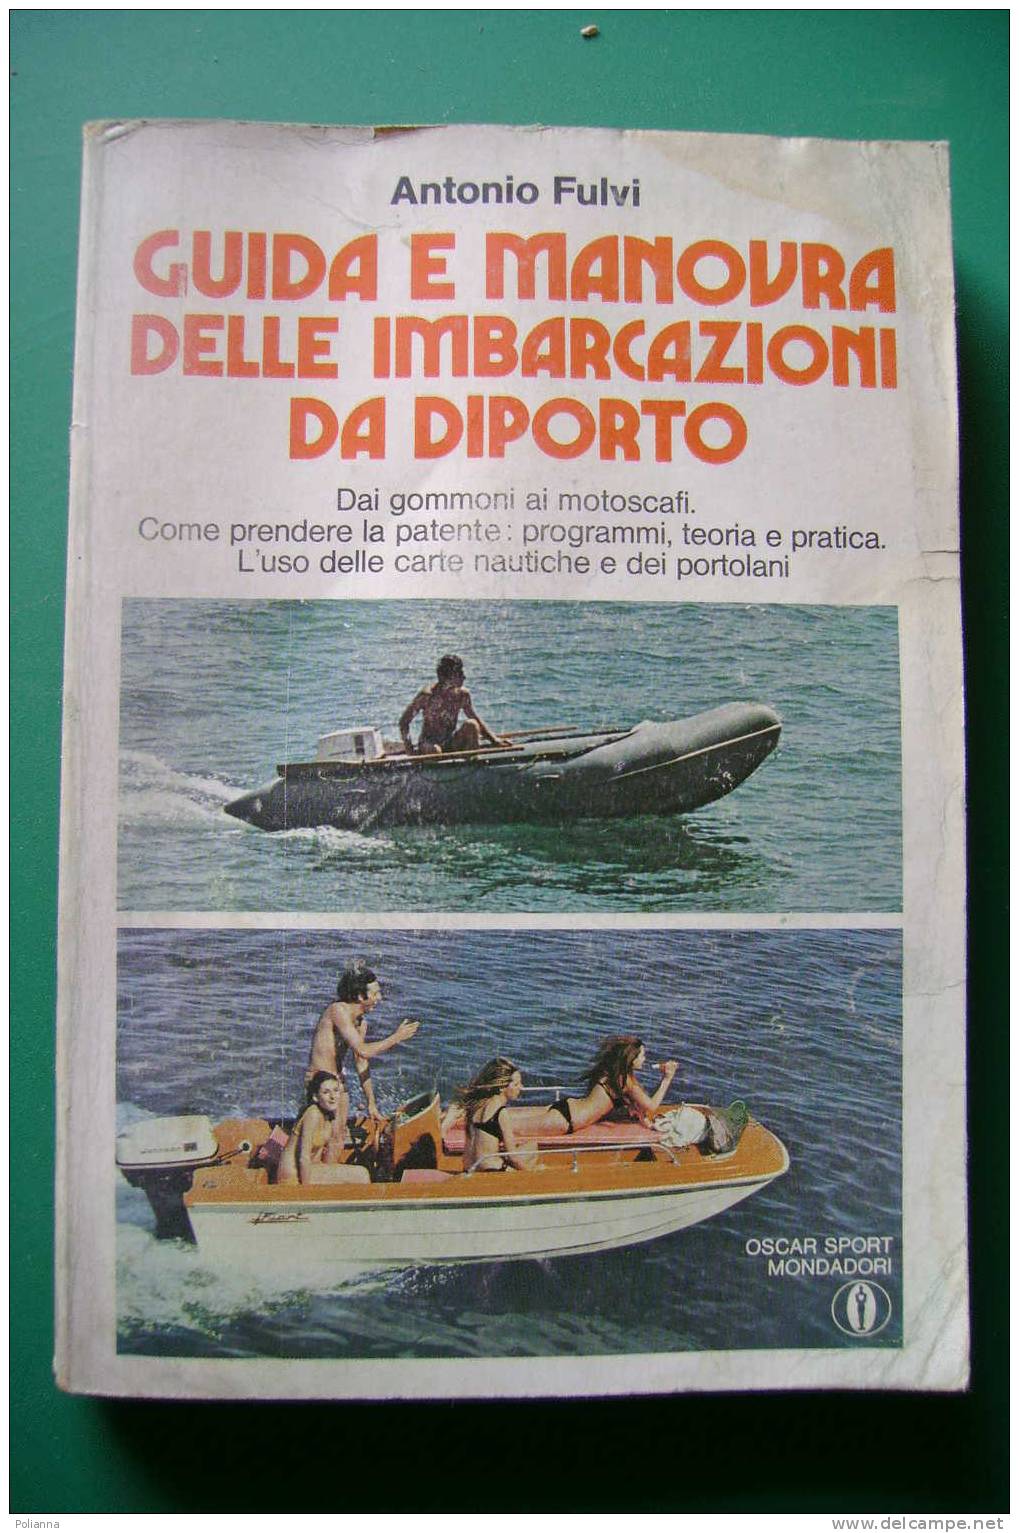 PDM/43 Antonio Fulvi GUIDA E MANOVRA DELLE IMBARCAZIONI DA DIPORTO Oscar Mondadori 1975/motoscafi/nautica - Sport